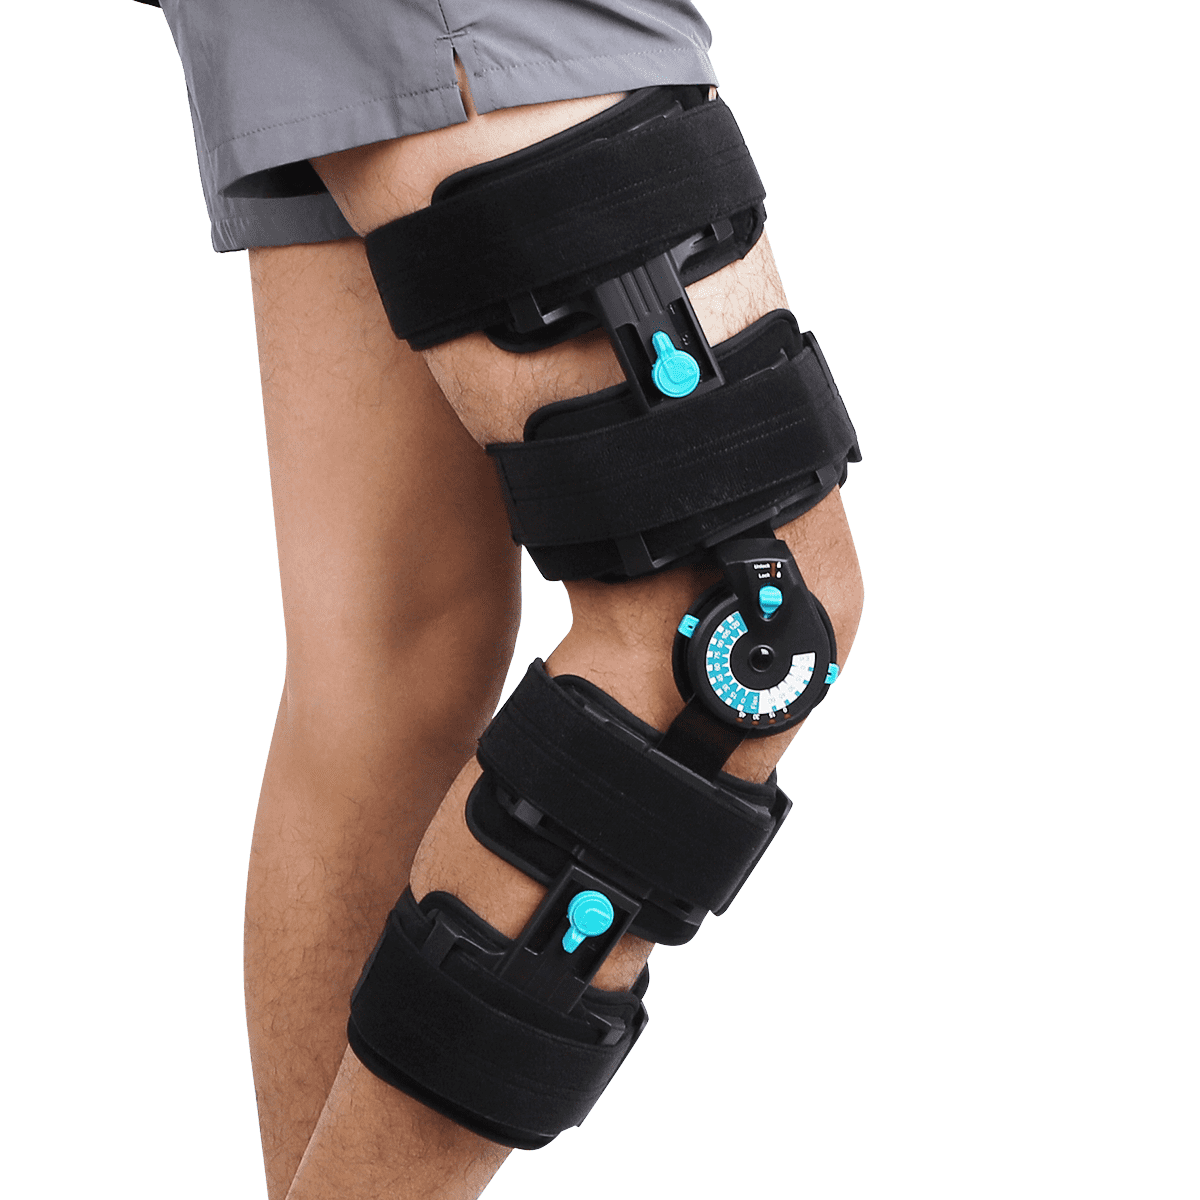 Orthomen Hinged Knee Brace Recovery Immobilization New Zealand | Ubuy